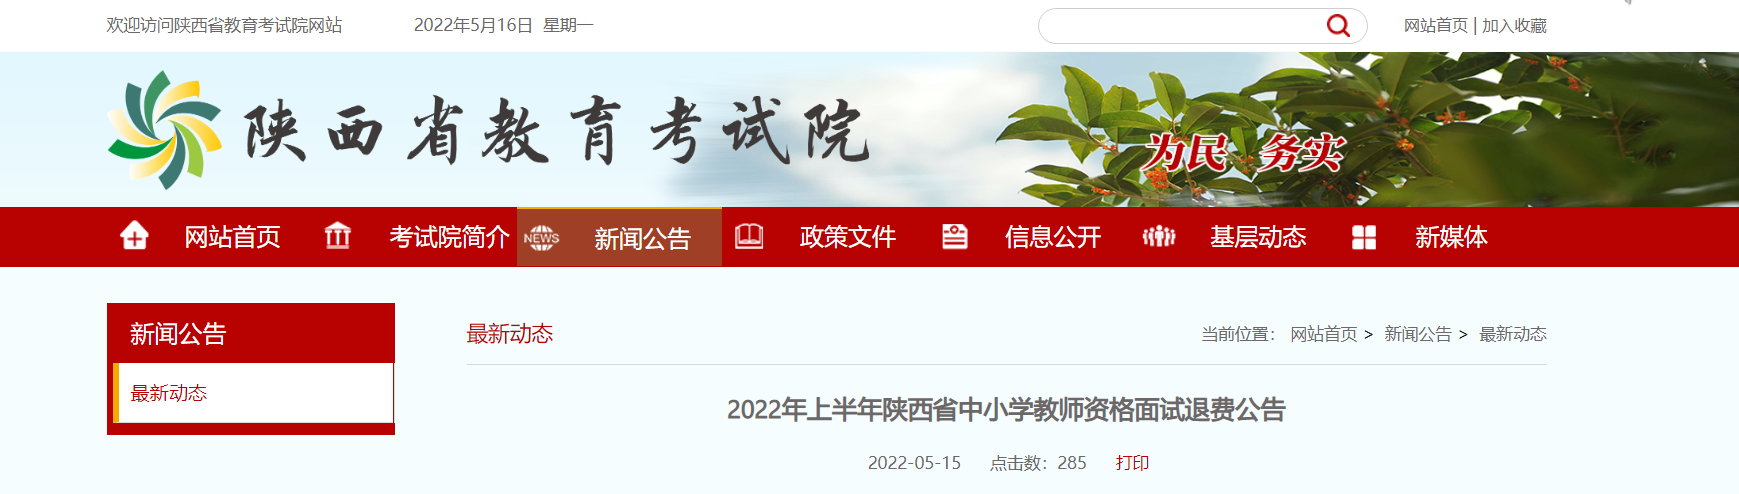 2022年上半年陕西中小学教师资格面试退费公告